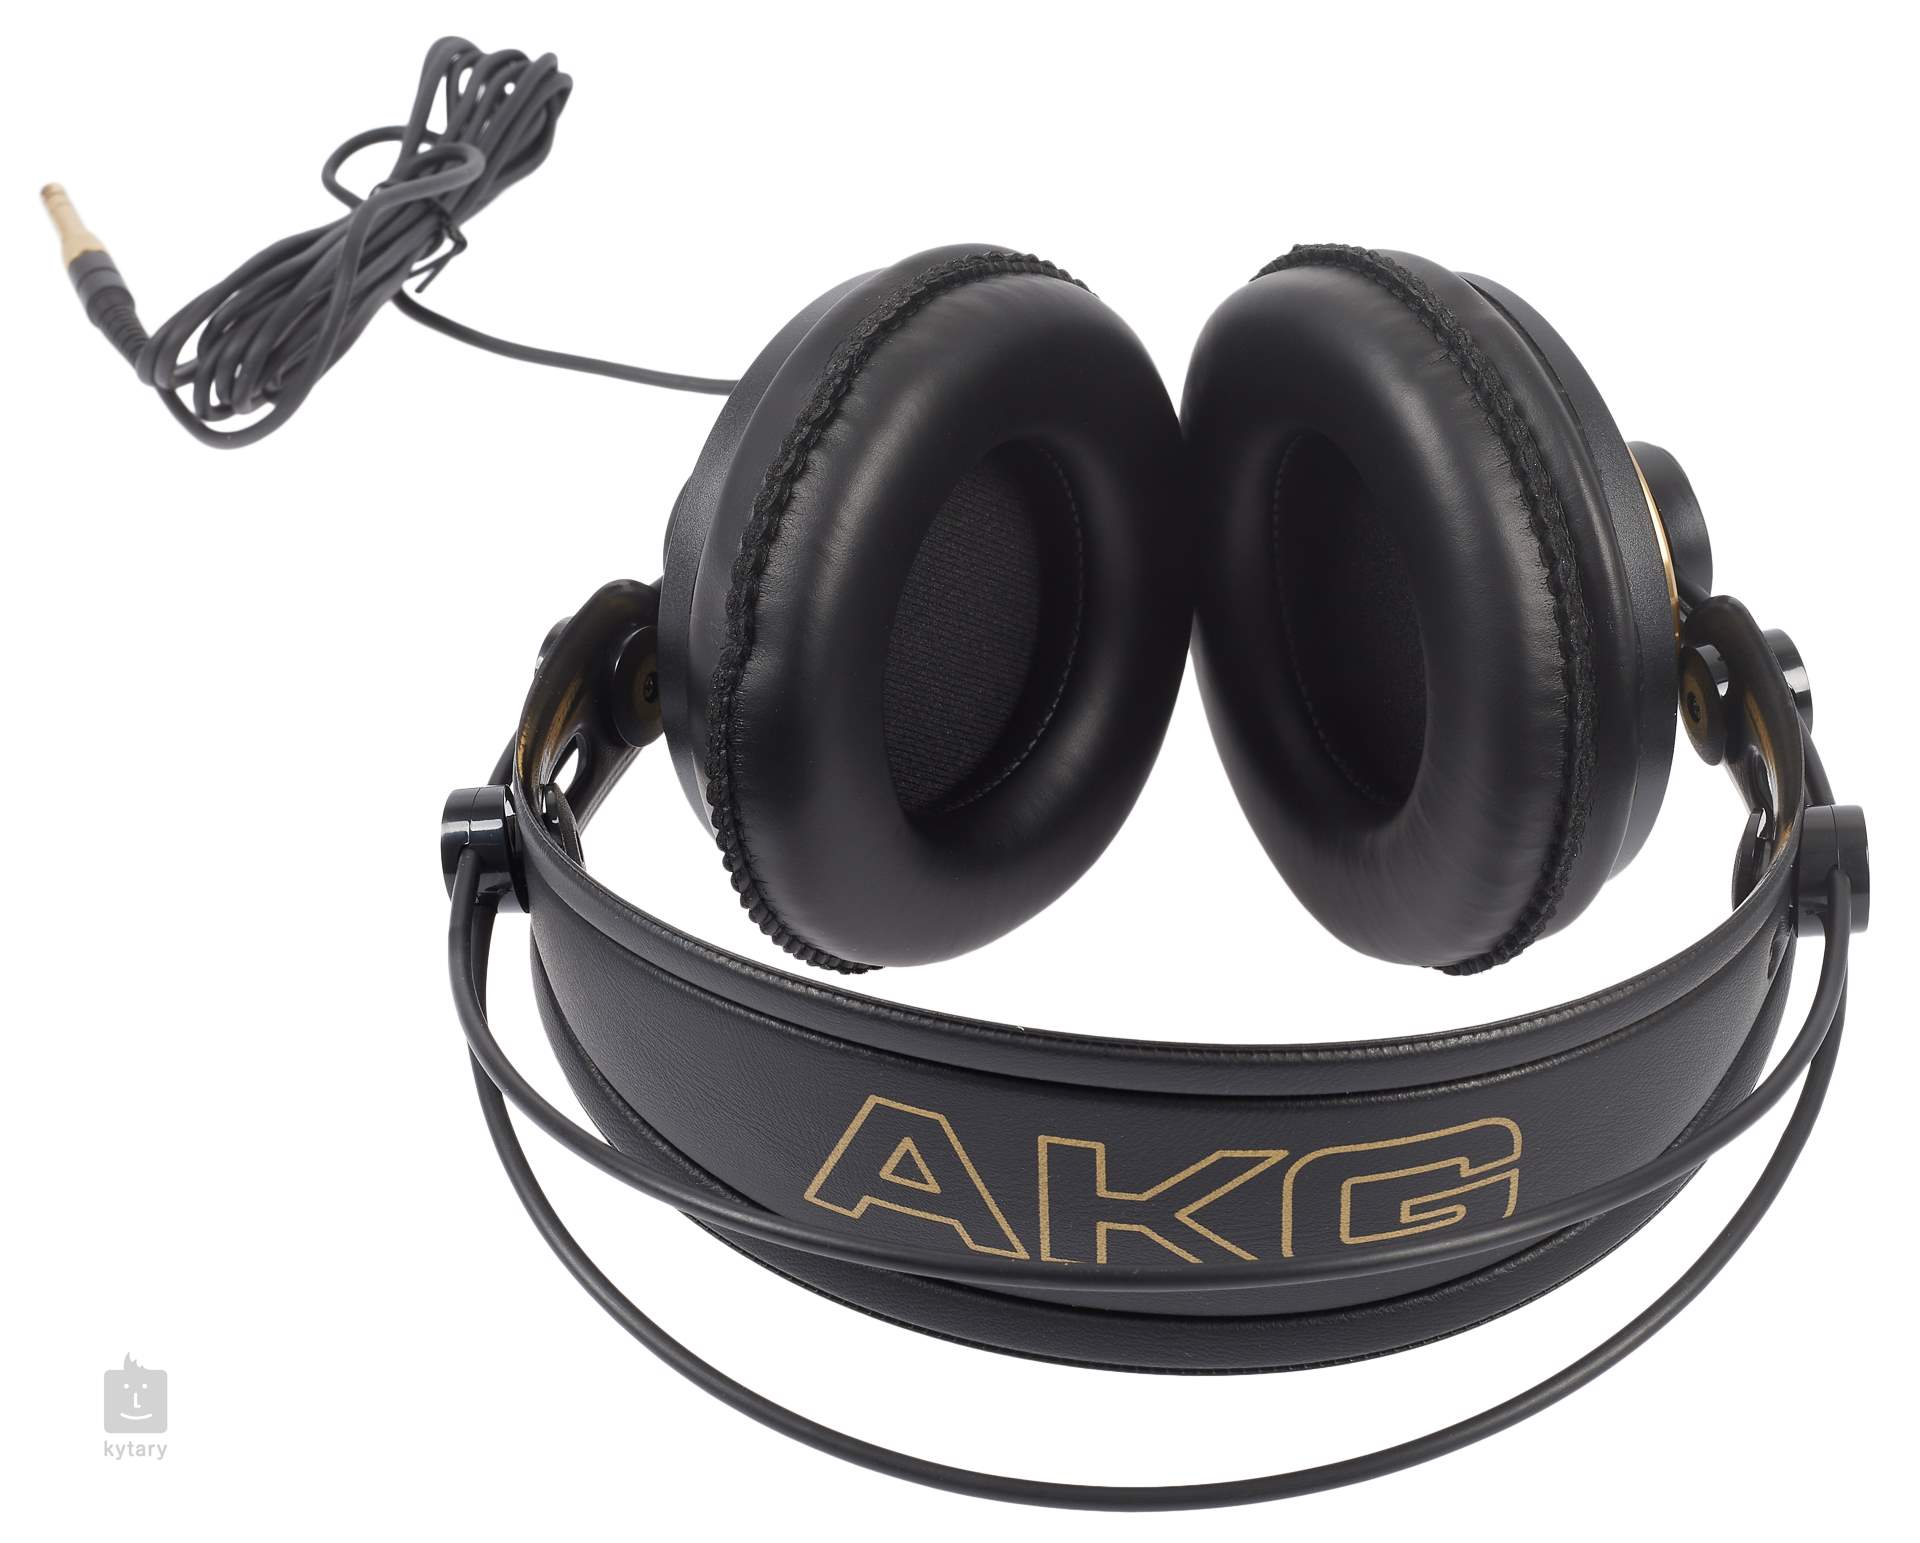  Auriculares de estudio semiabiertos AKG K 240 : Todo